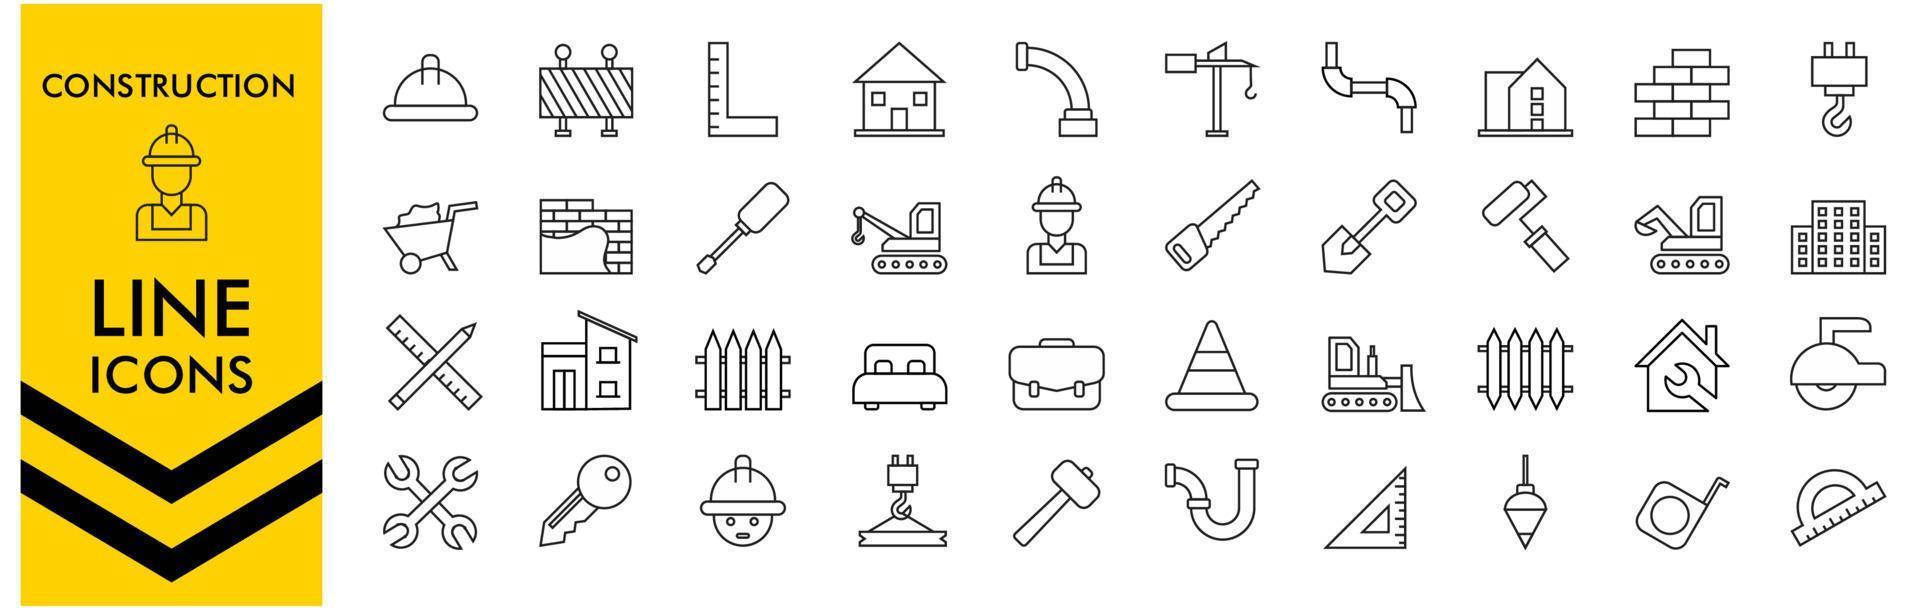 constructie dunne lijn iconen, constructie lijn iconen. gebouw, ingenieur, bedrijf, bouwer, industrie. vector illustratie